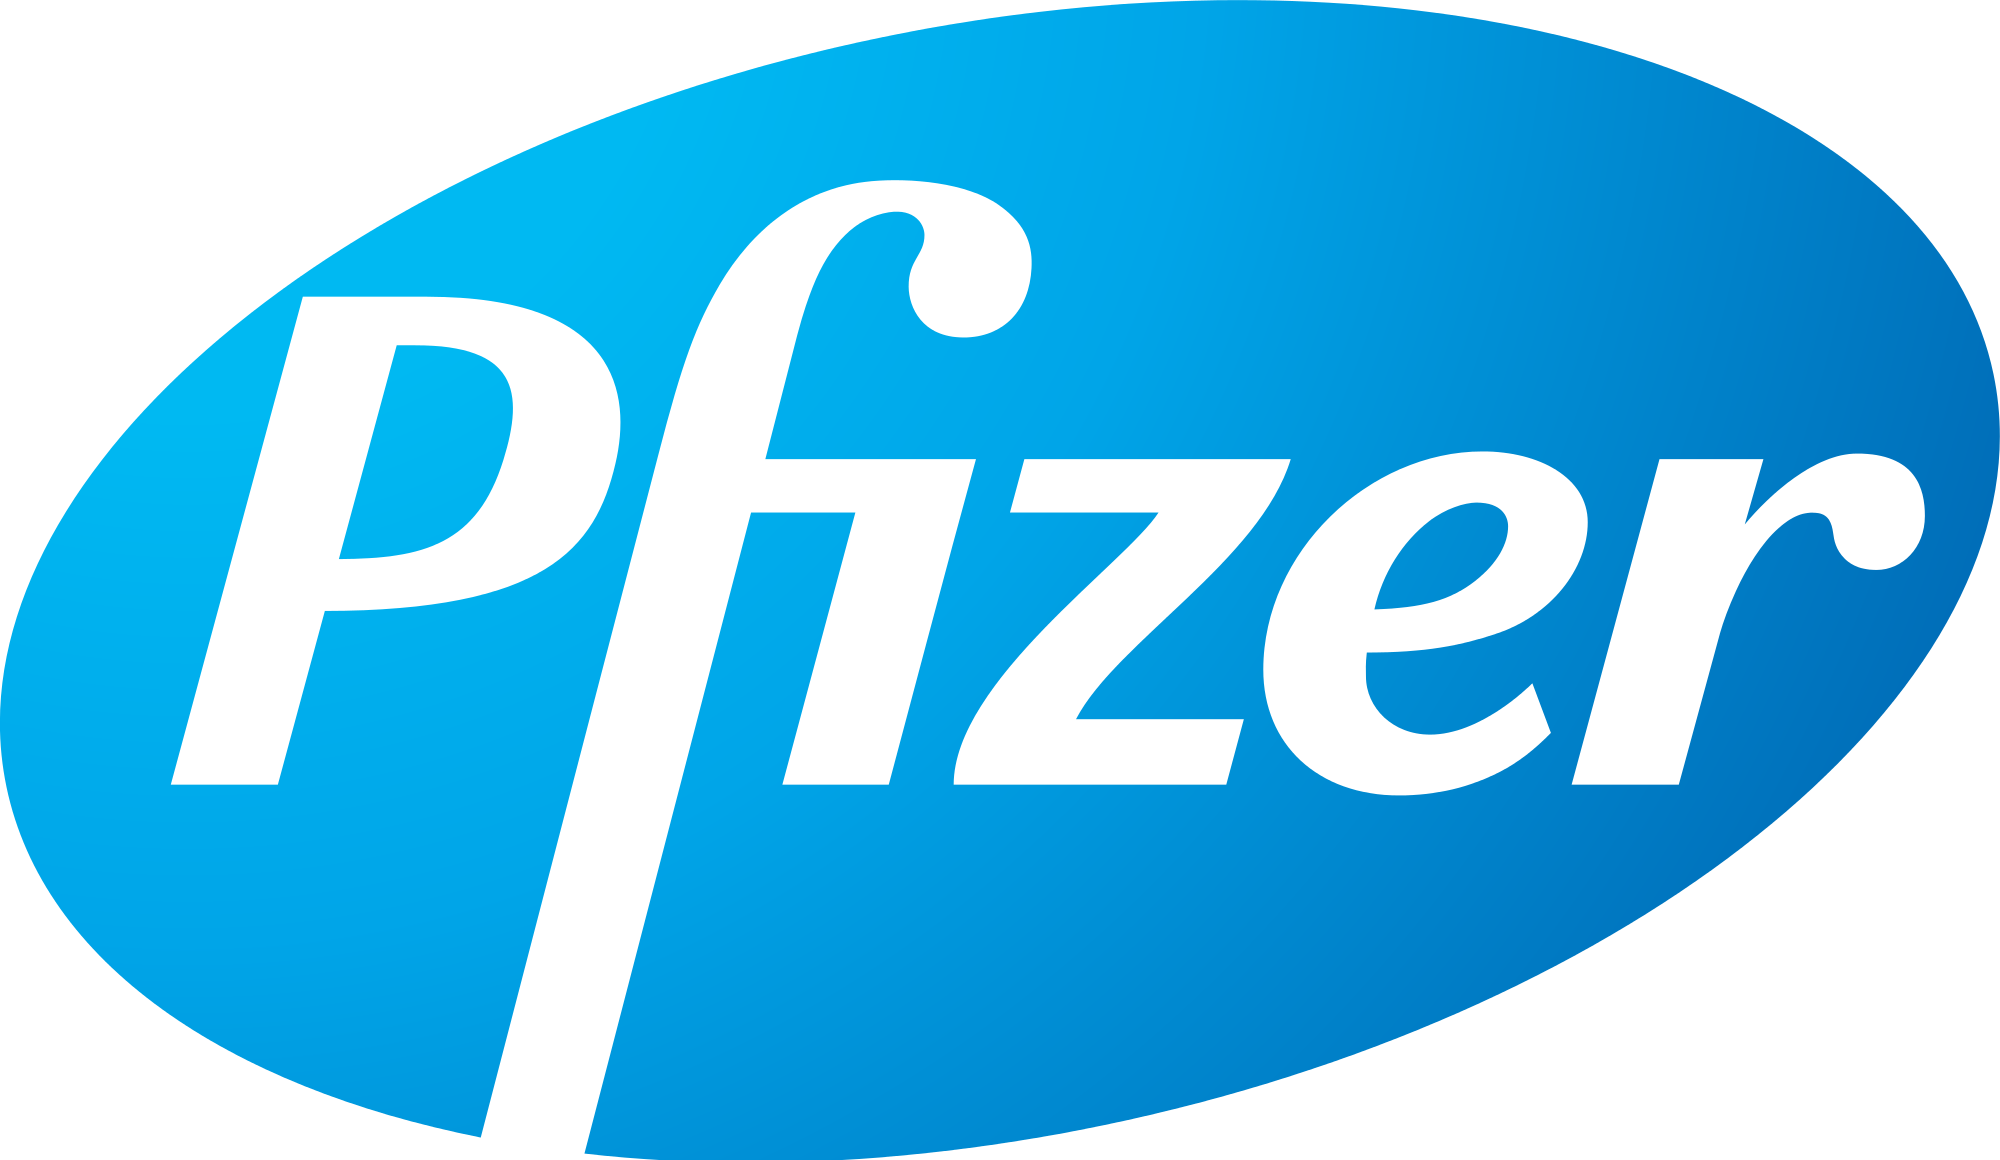 Pfizer-Lavora-Con-Noi